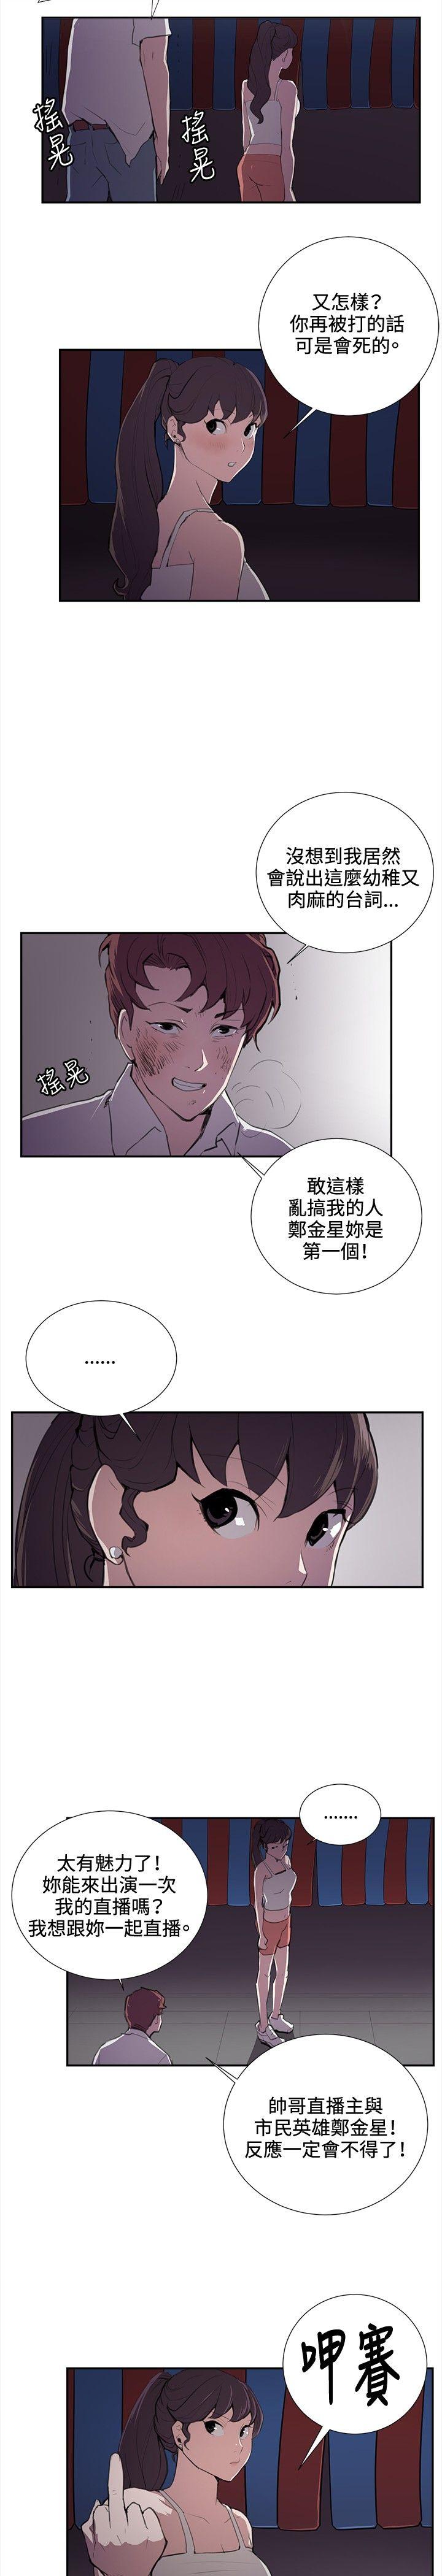 韩国污漫画 深夜便利店 第44话 19